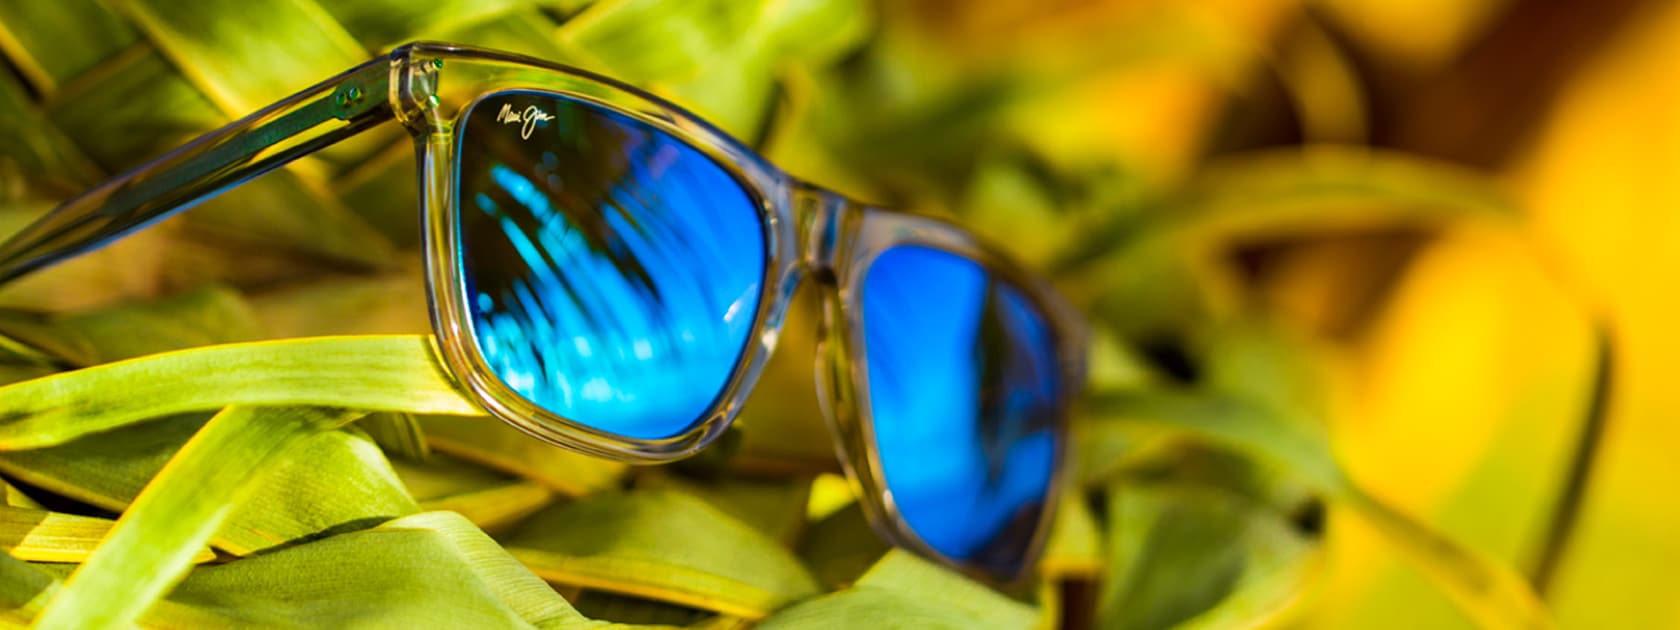 gafas de sol de montura transparente con lentes azules expuestas sobre hojas de palma verdes